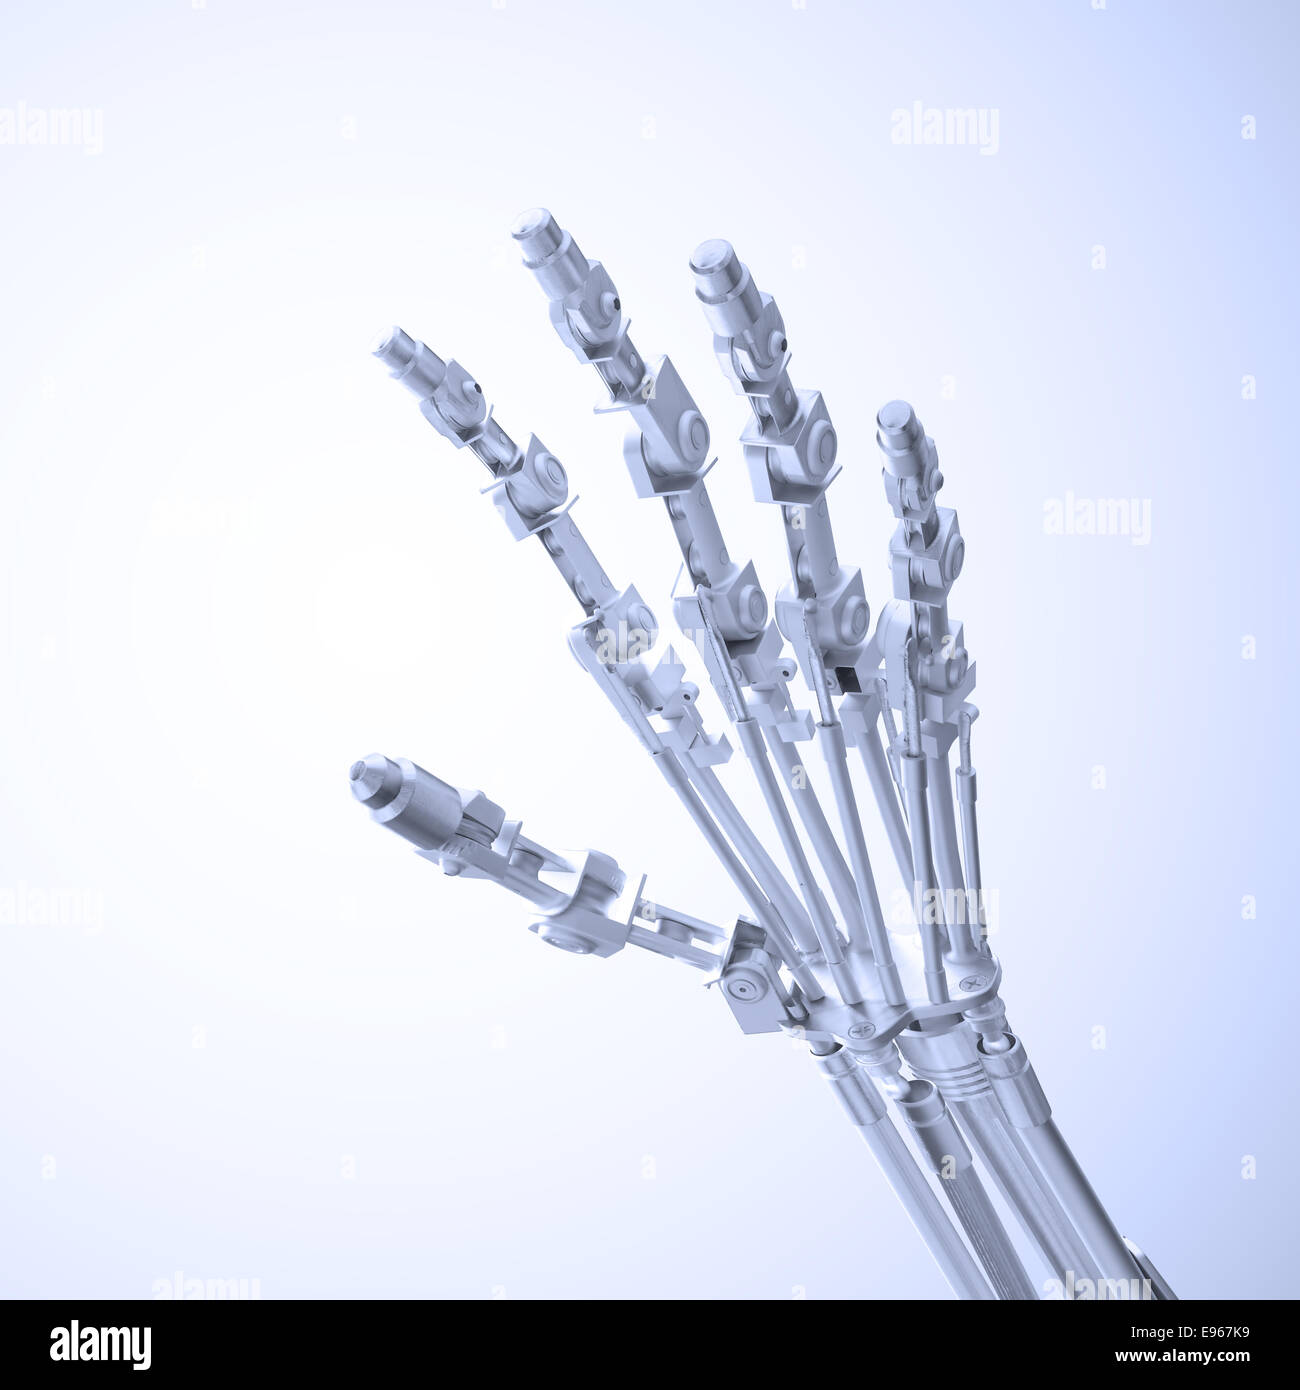 Eine Prothese - Prothetik und Robotik Technologiekonzept Stockfoto